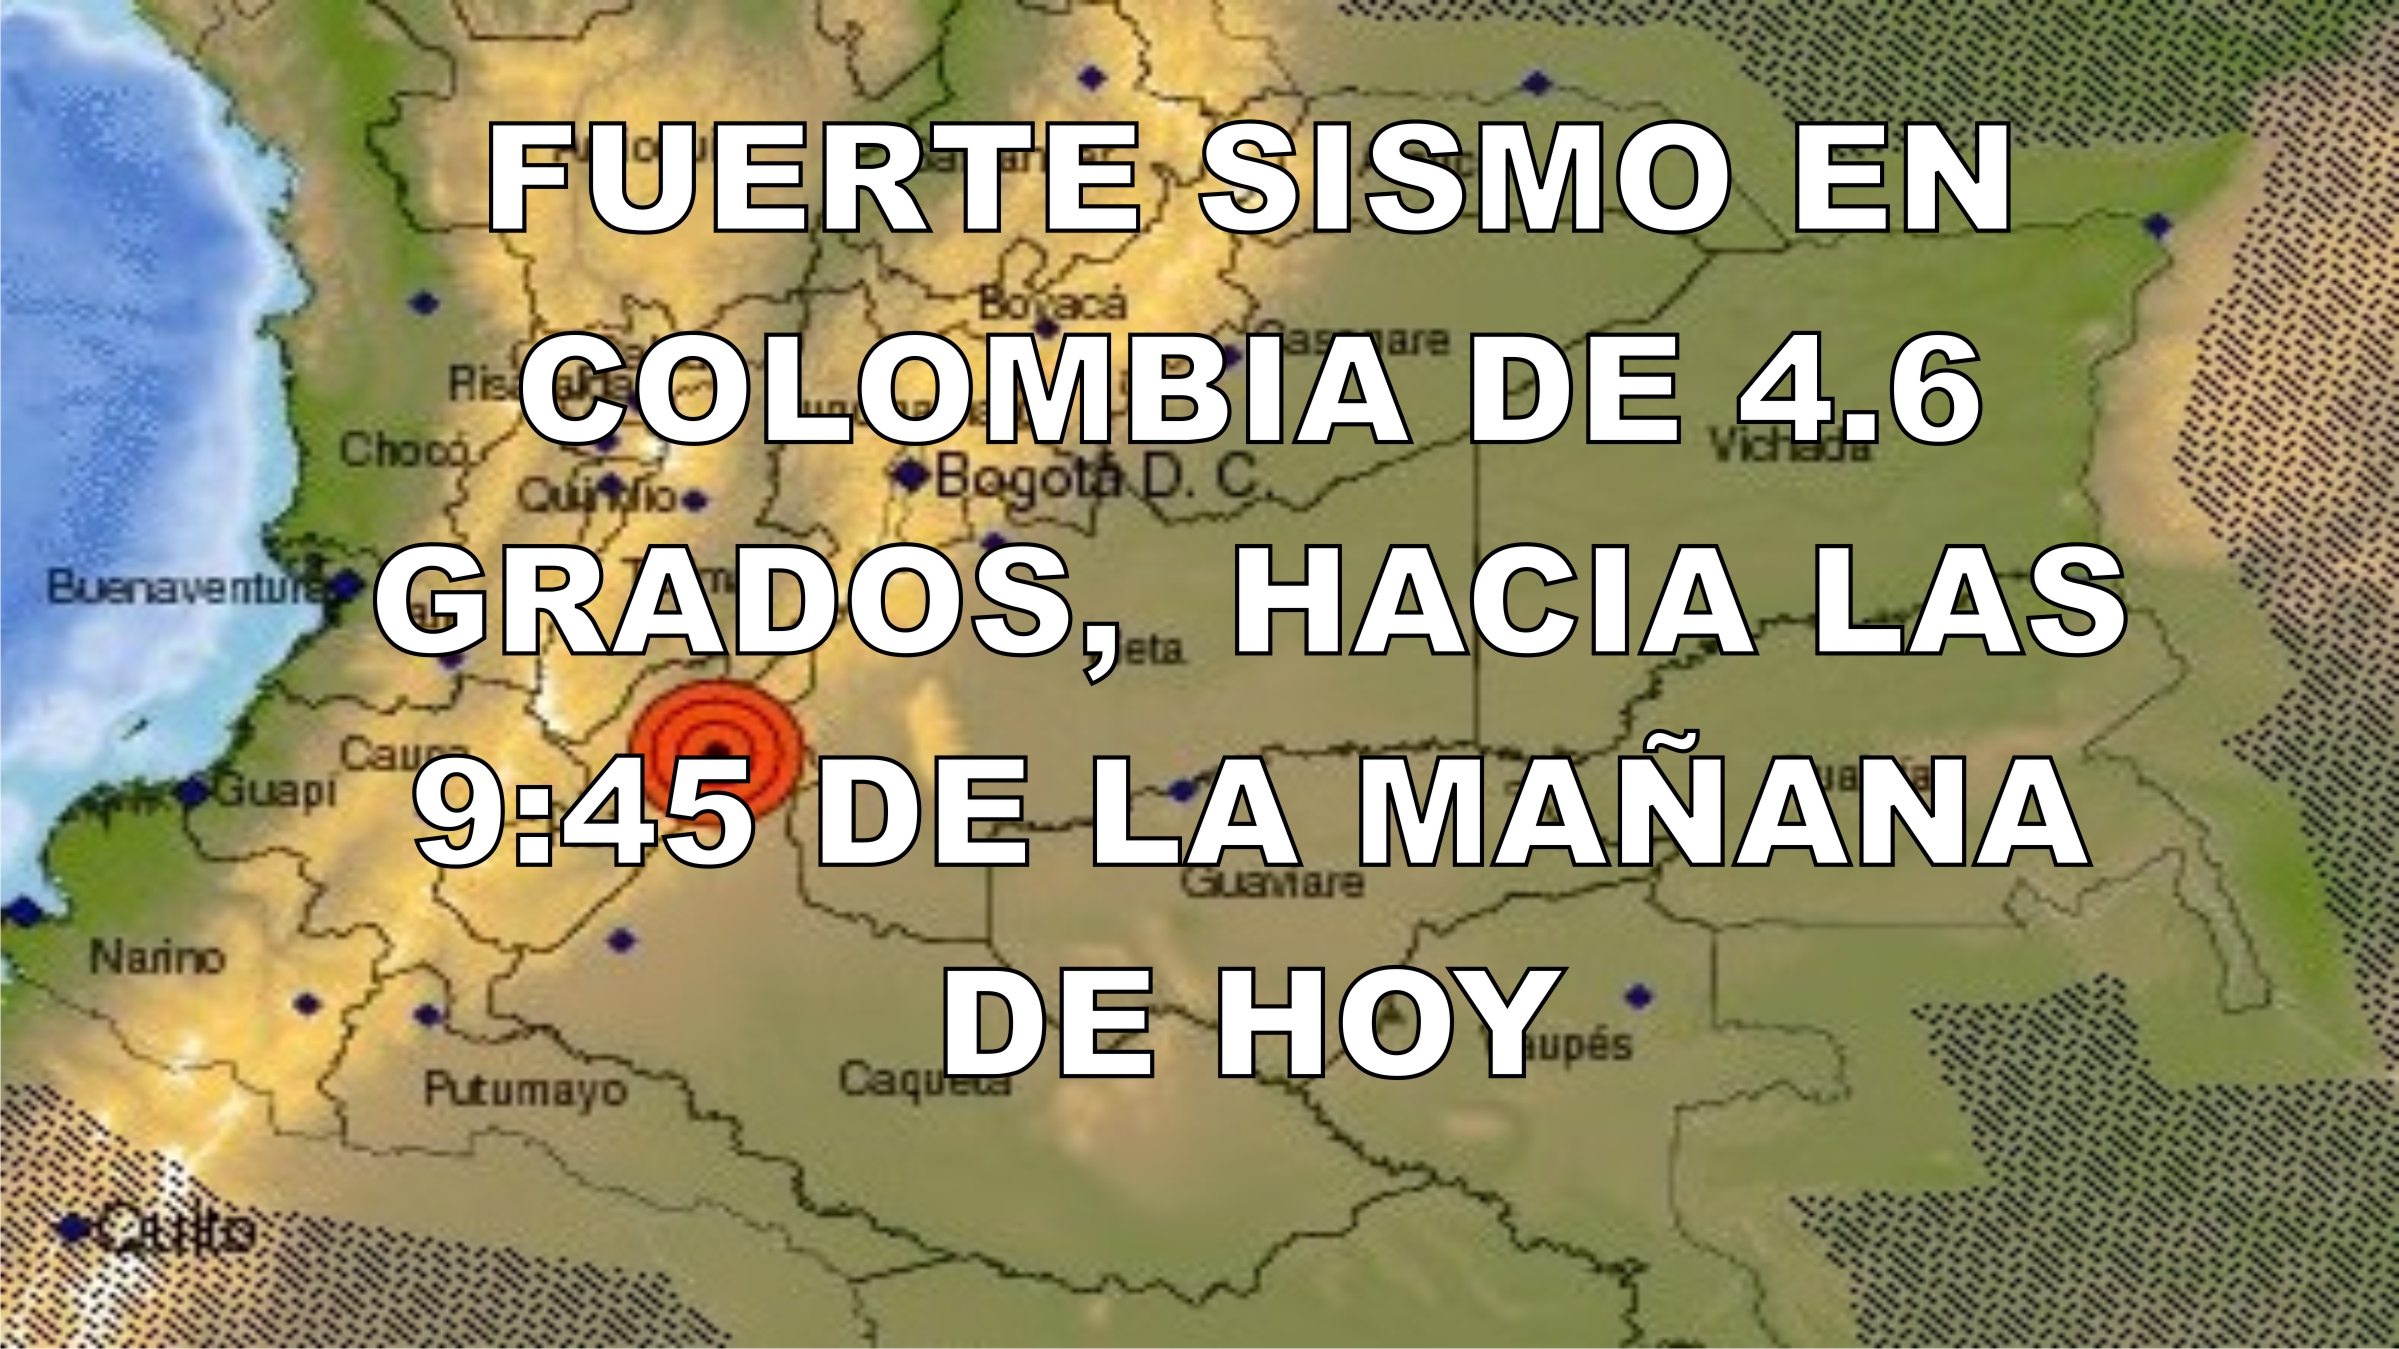 Fuerte sismo en Colombia de 4.6 grados, hacia las 945 de la mañana de